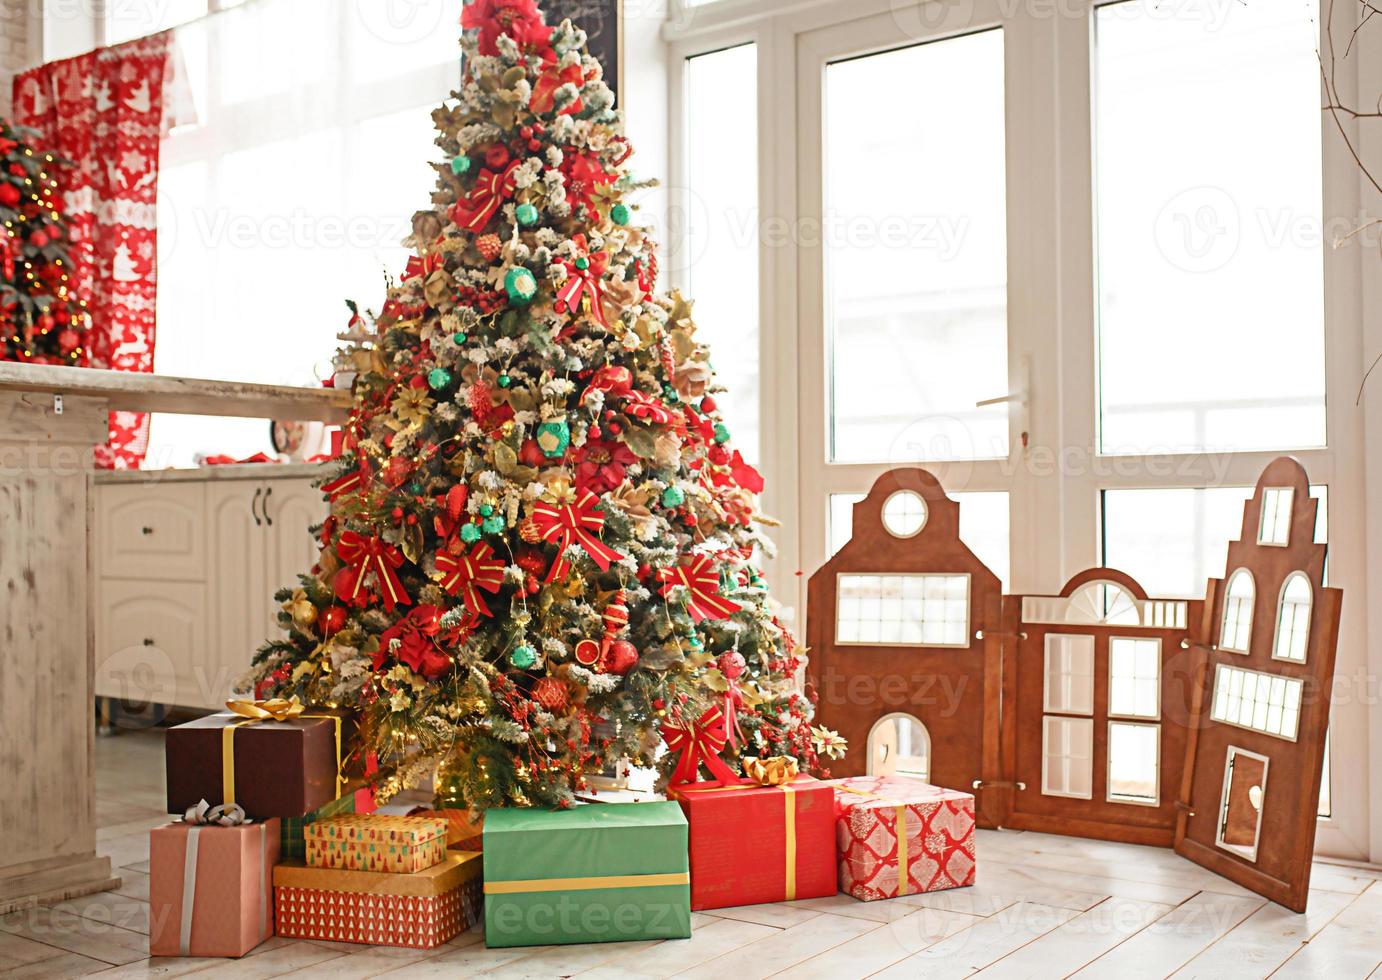 de jul träd är dekorerad med röd och grön leksaker, lådor med gåvor på de golv. ny år atmosfär i de hus, festlig interiör. foto